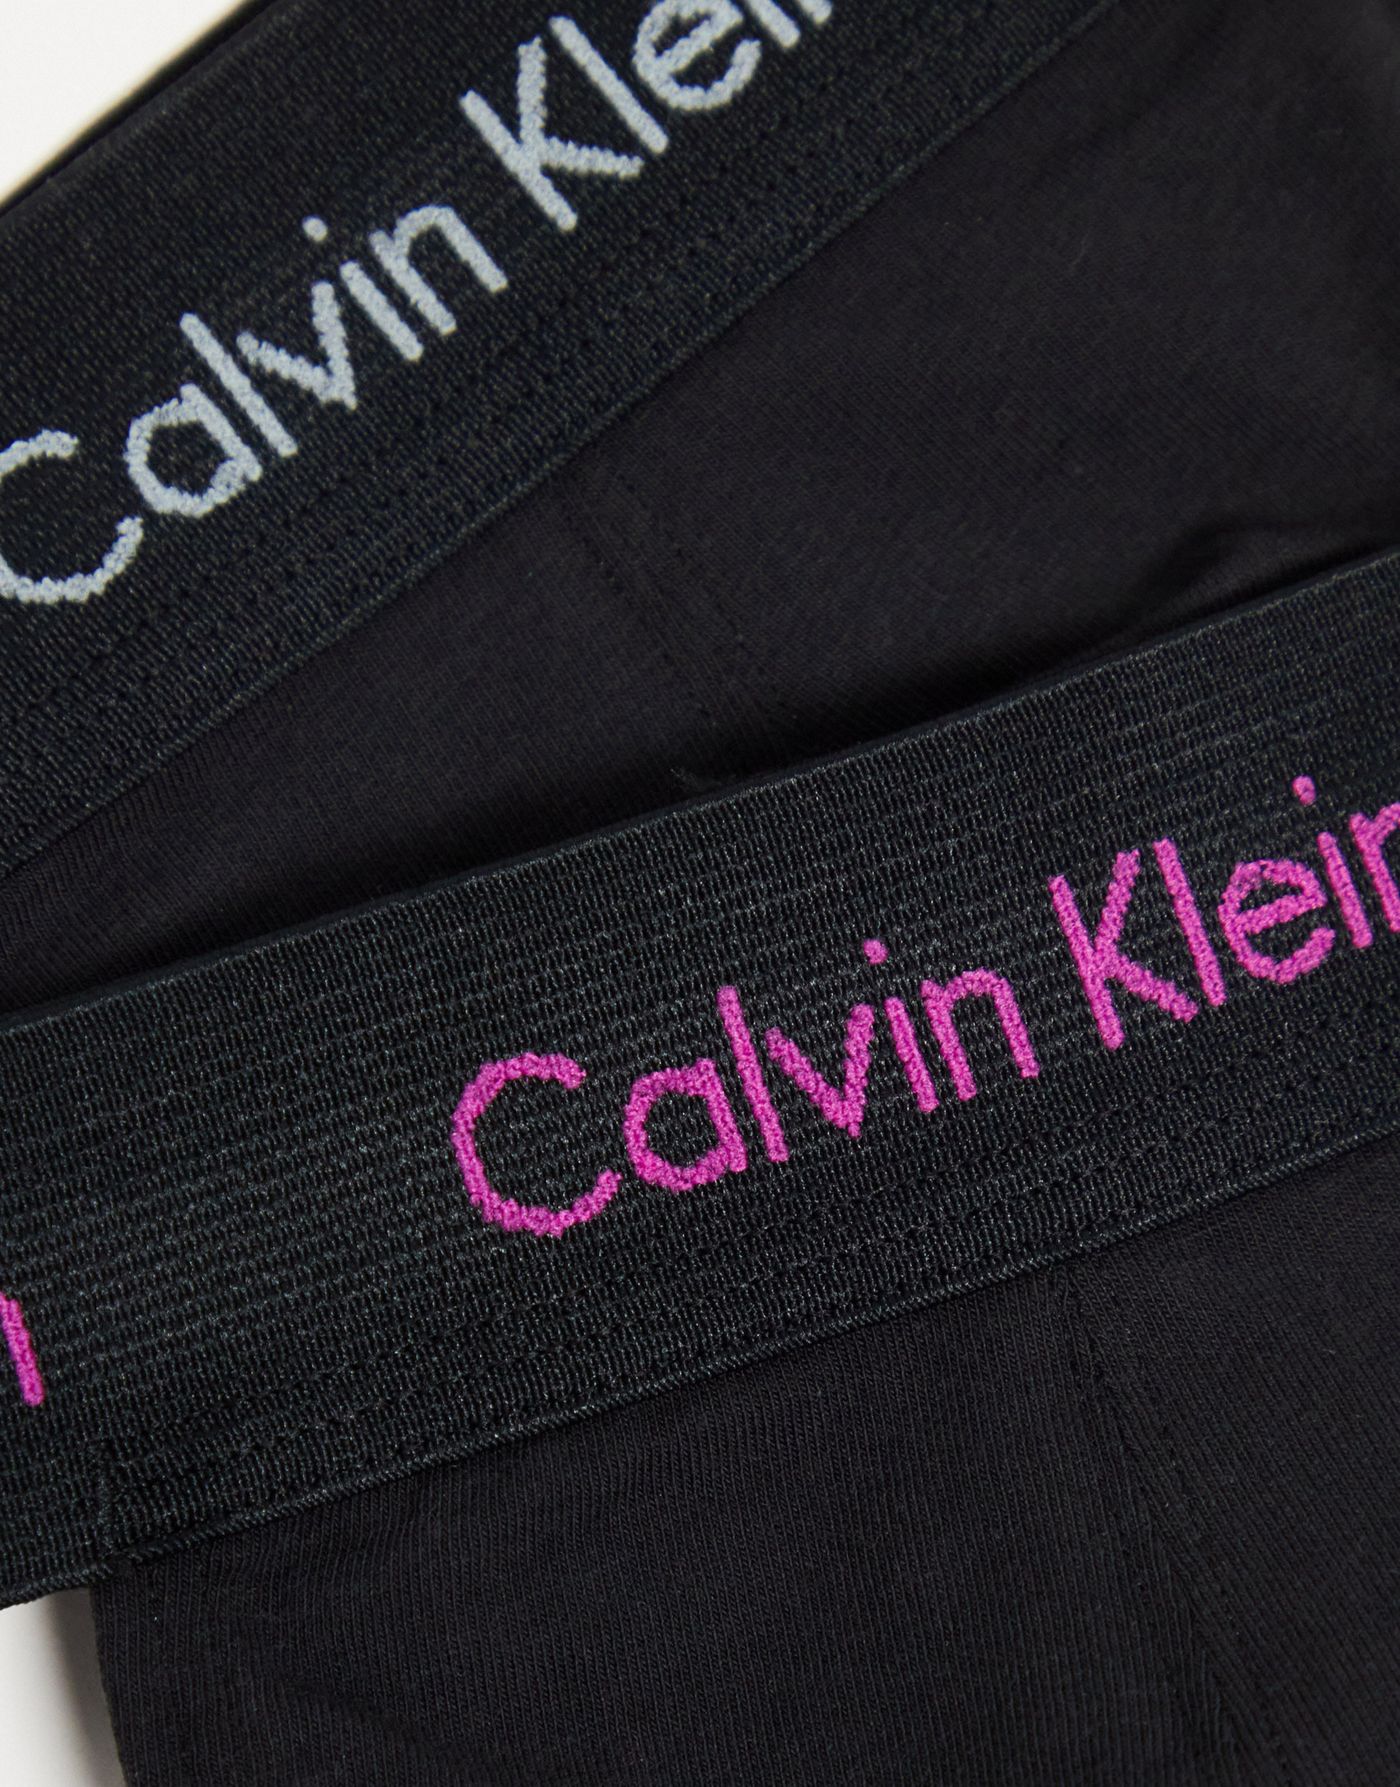 Calvin Klein 2 pack jock straps in black 